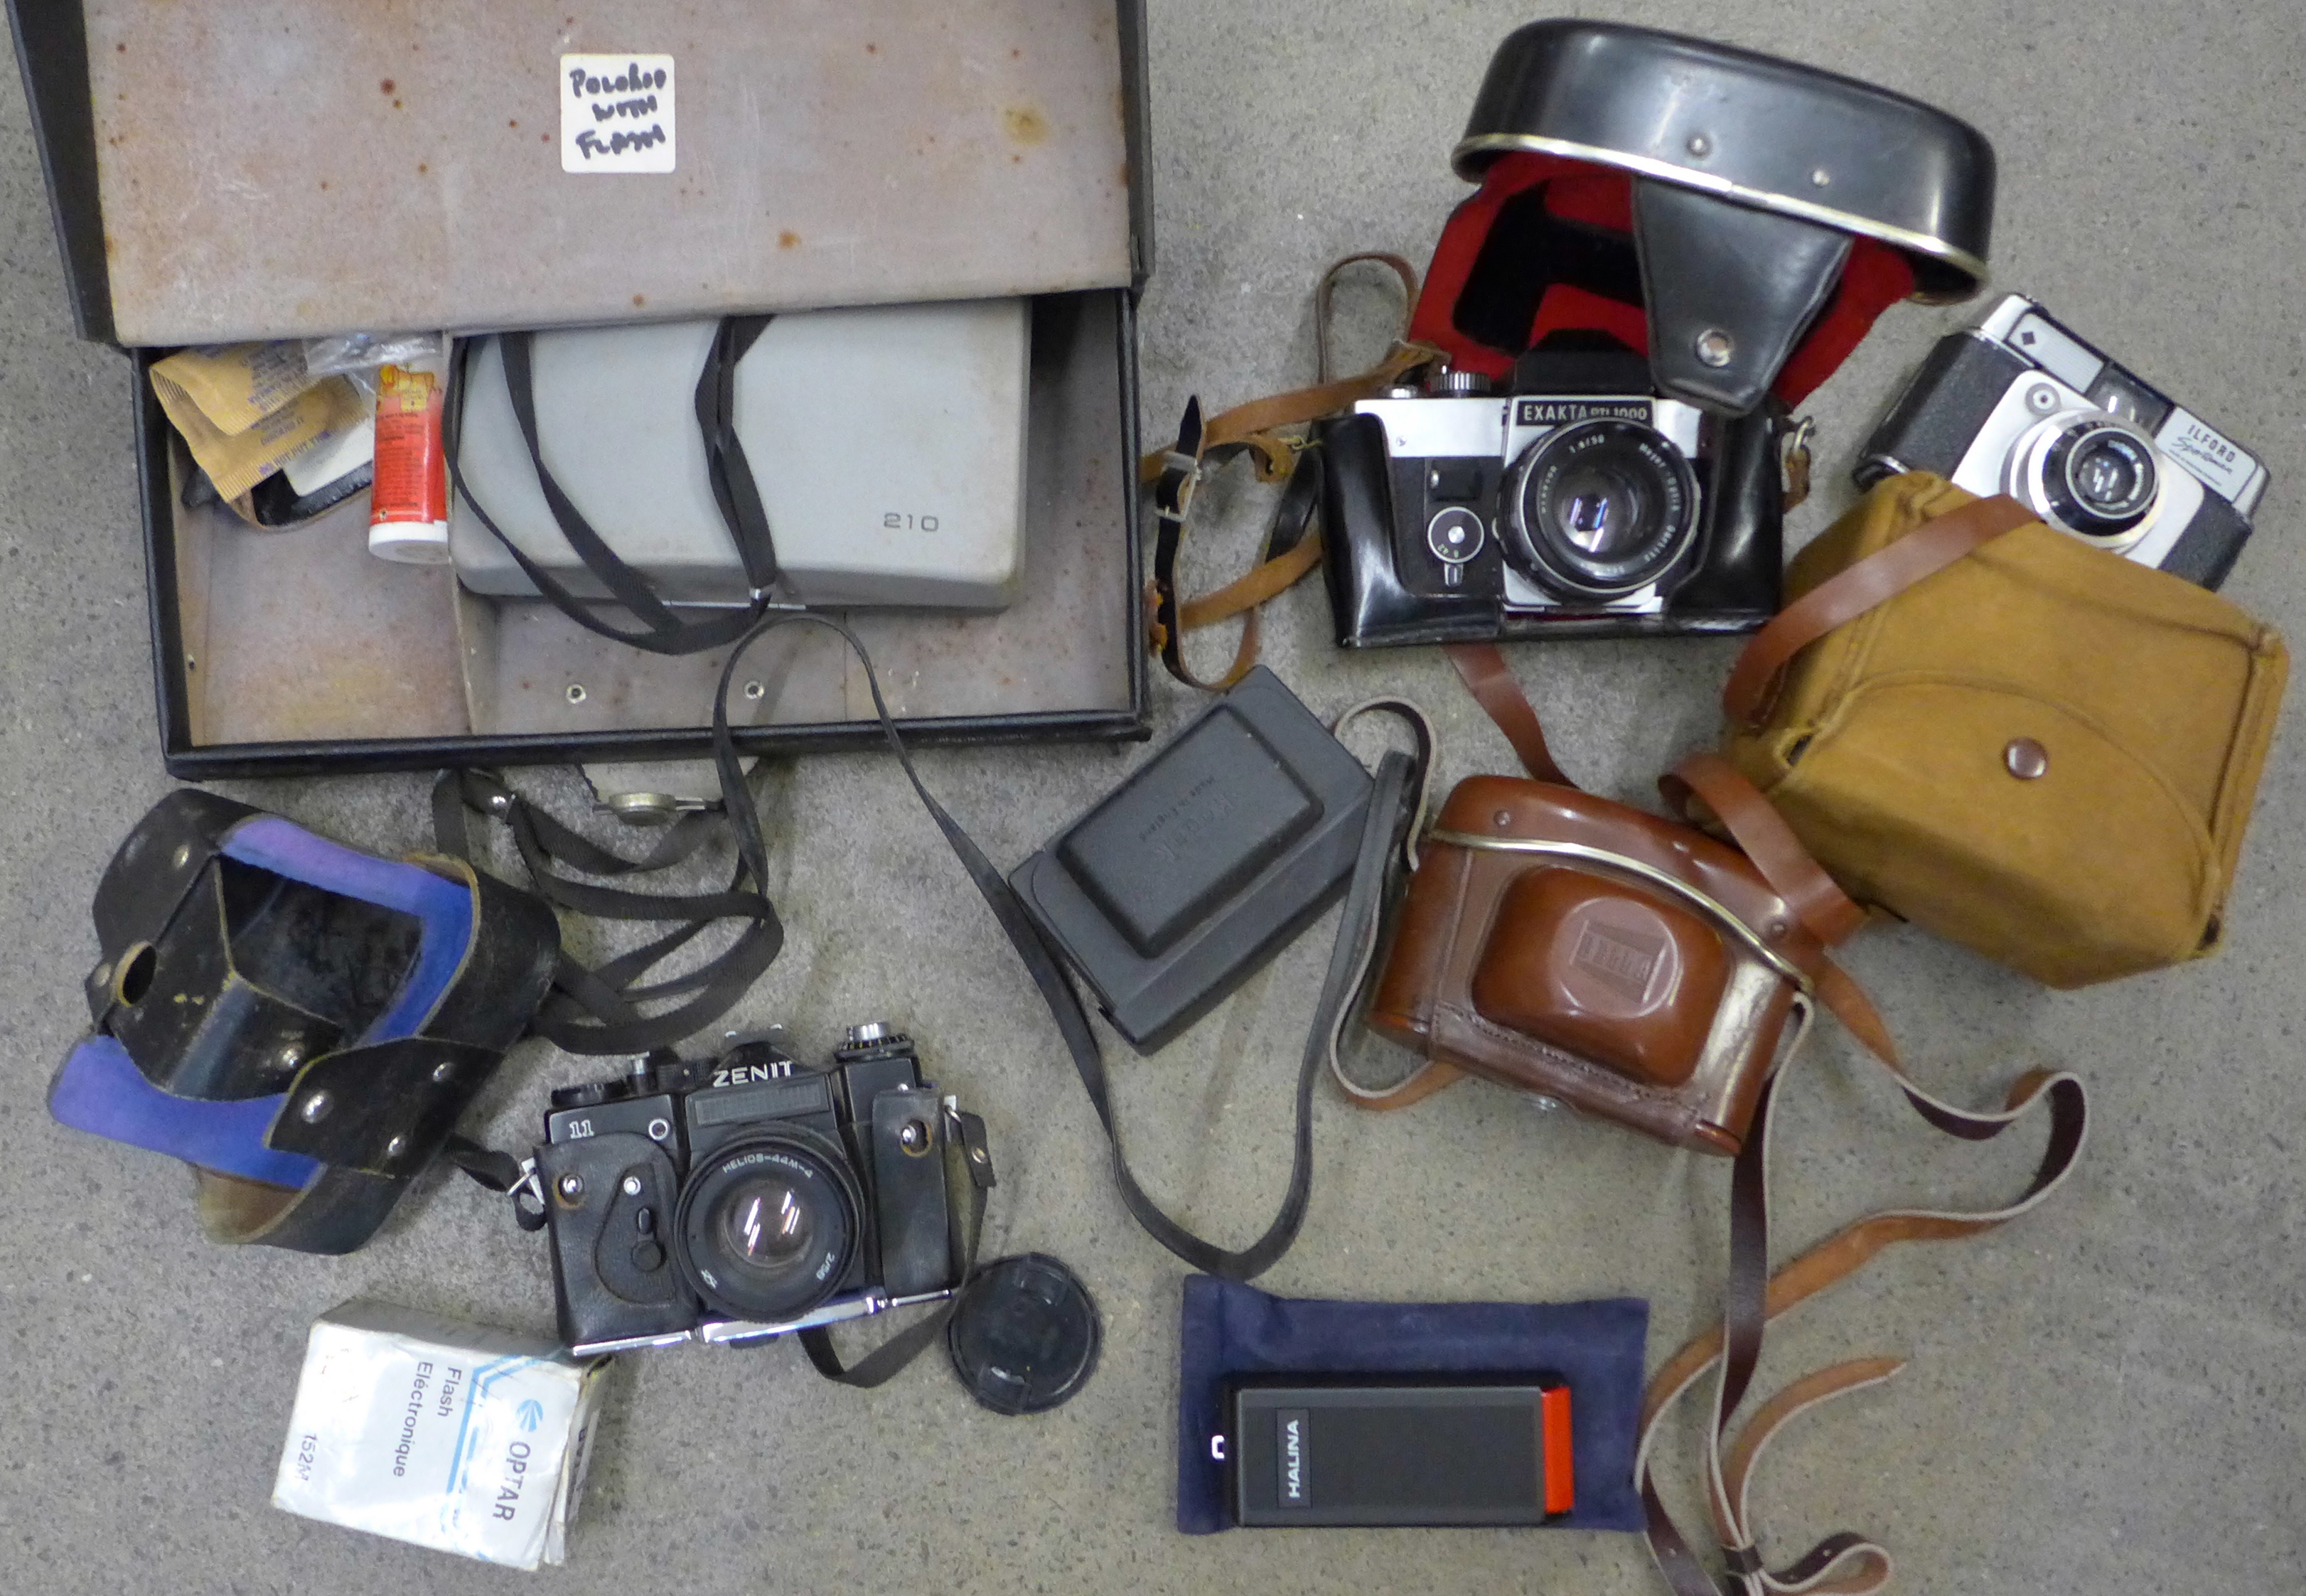 A collection of cameras including Exakta, Bella, Polaroid, Zenit, etc.